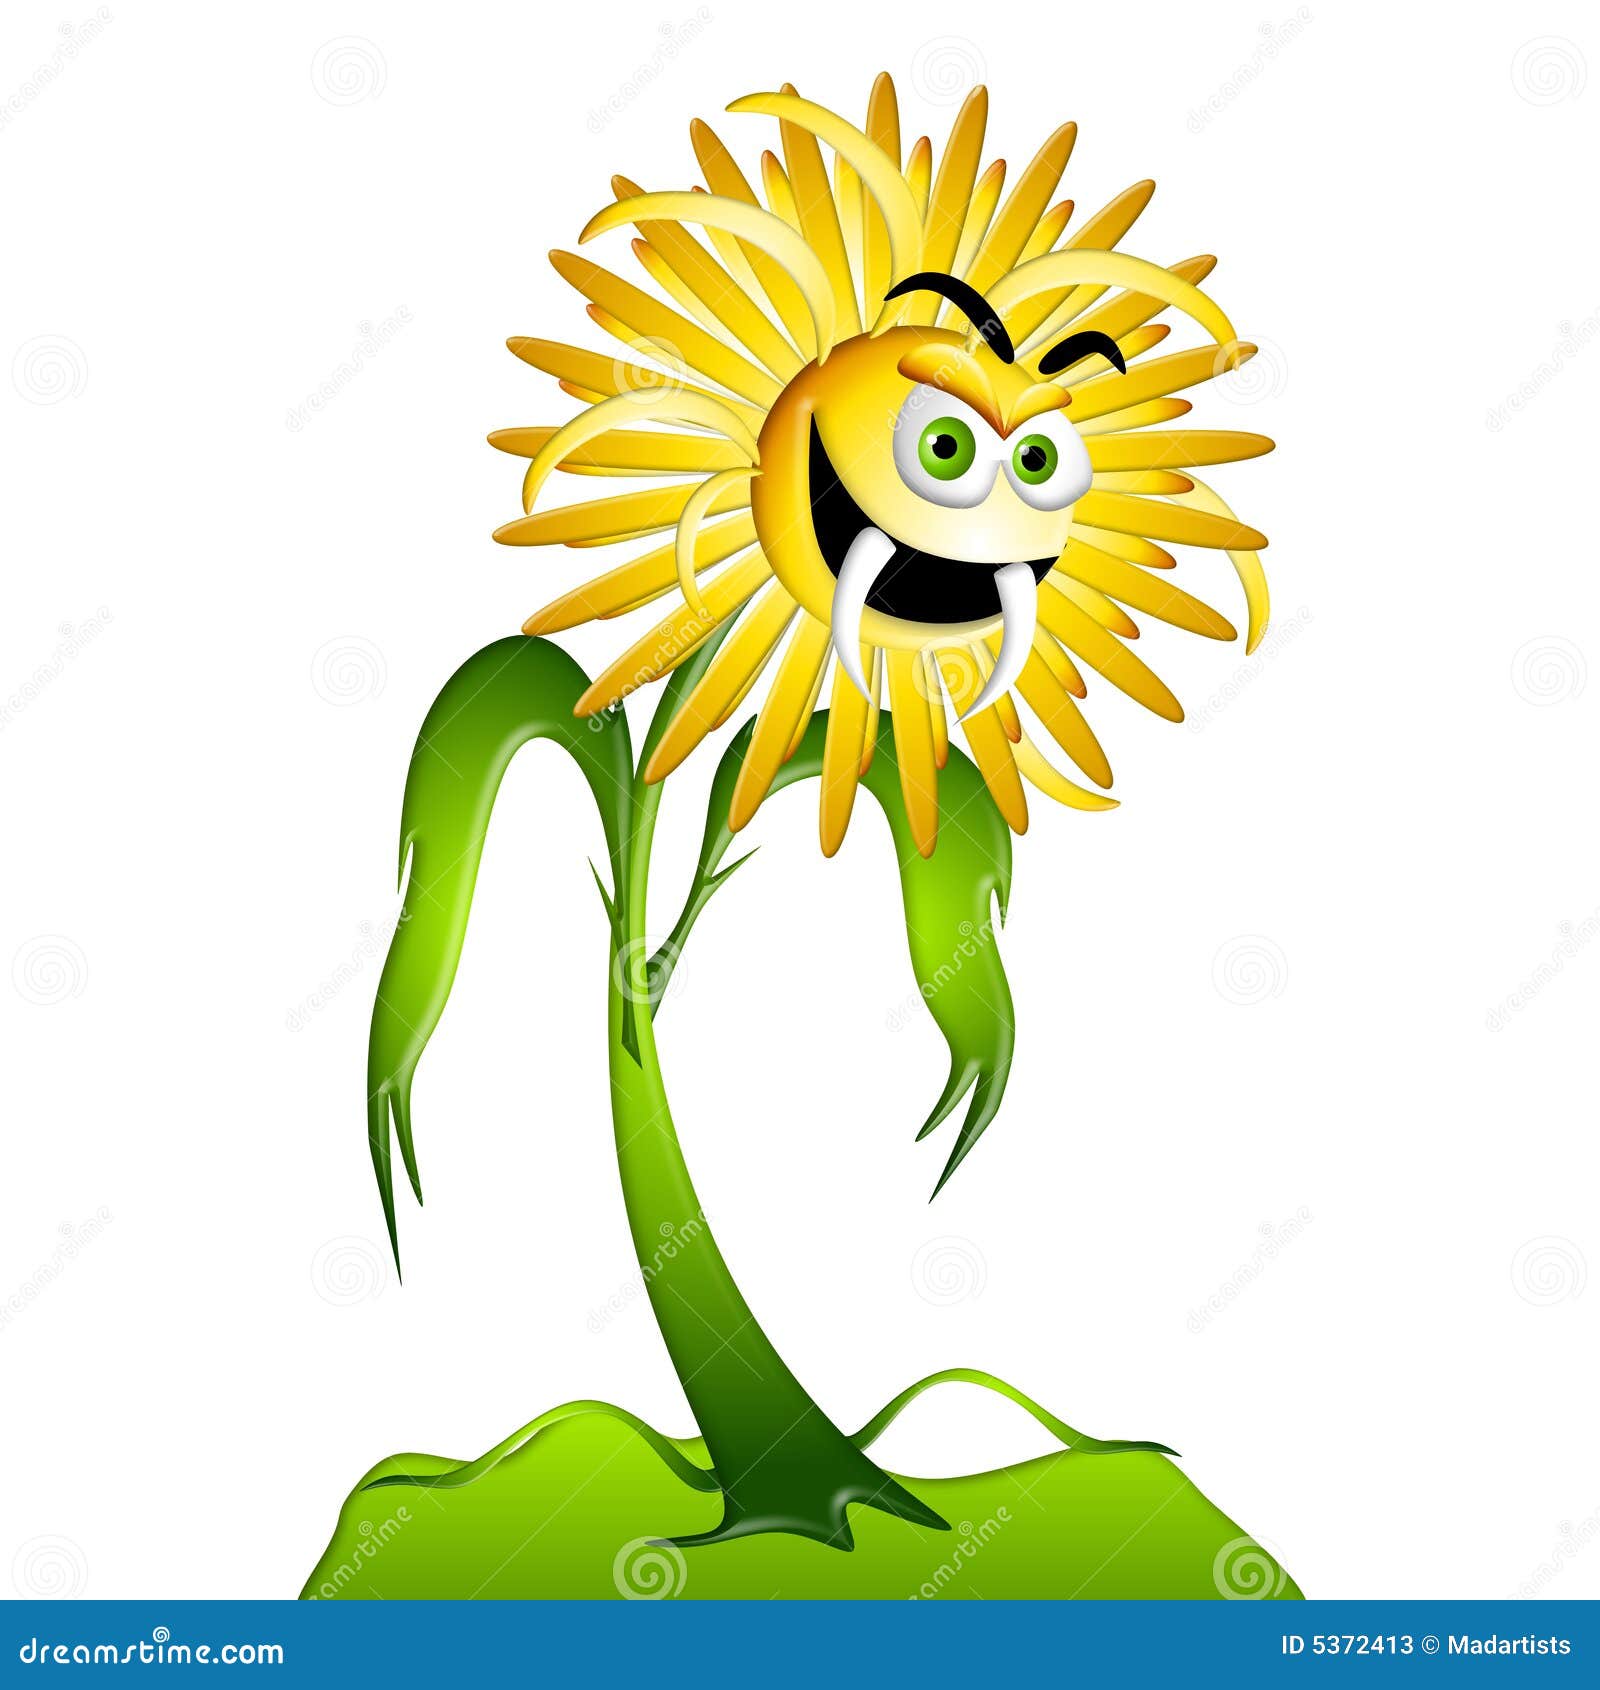 dandelion-weed-allergy-monster-2-5372413.jpg